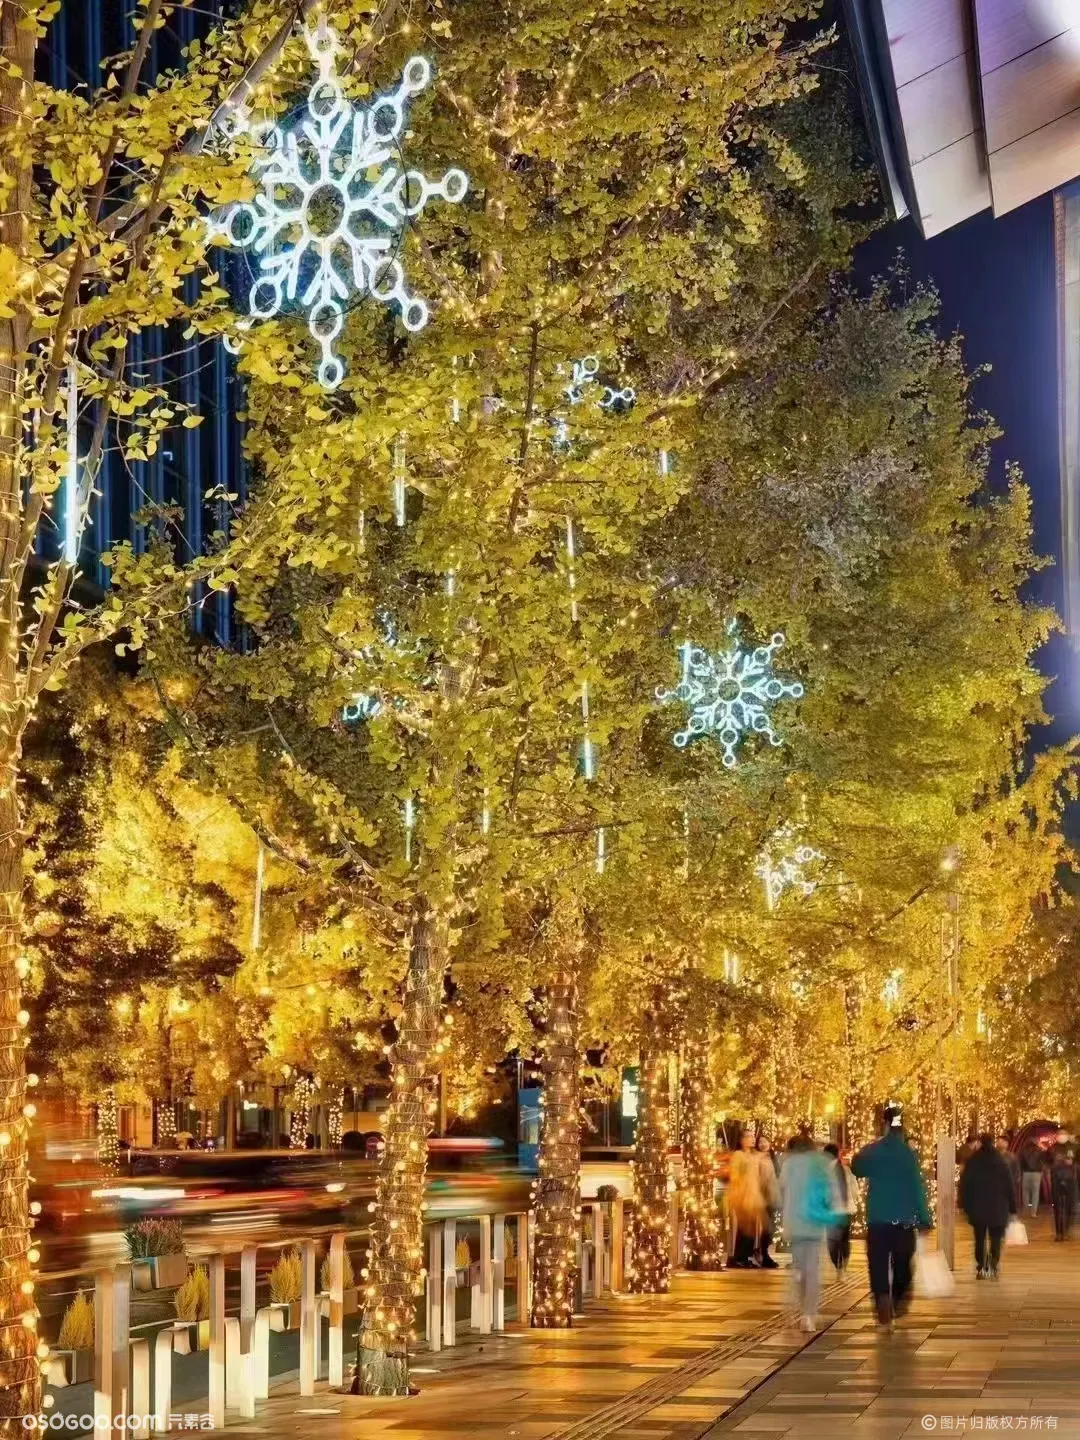 大型户外活动树木亮化灯光装置 文旅夜游项目策划